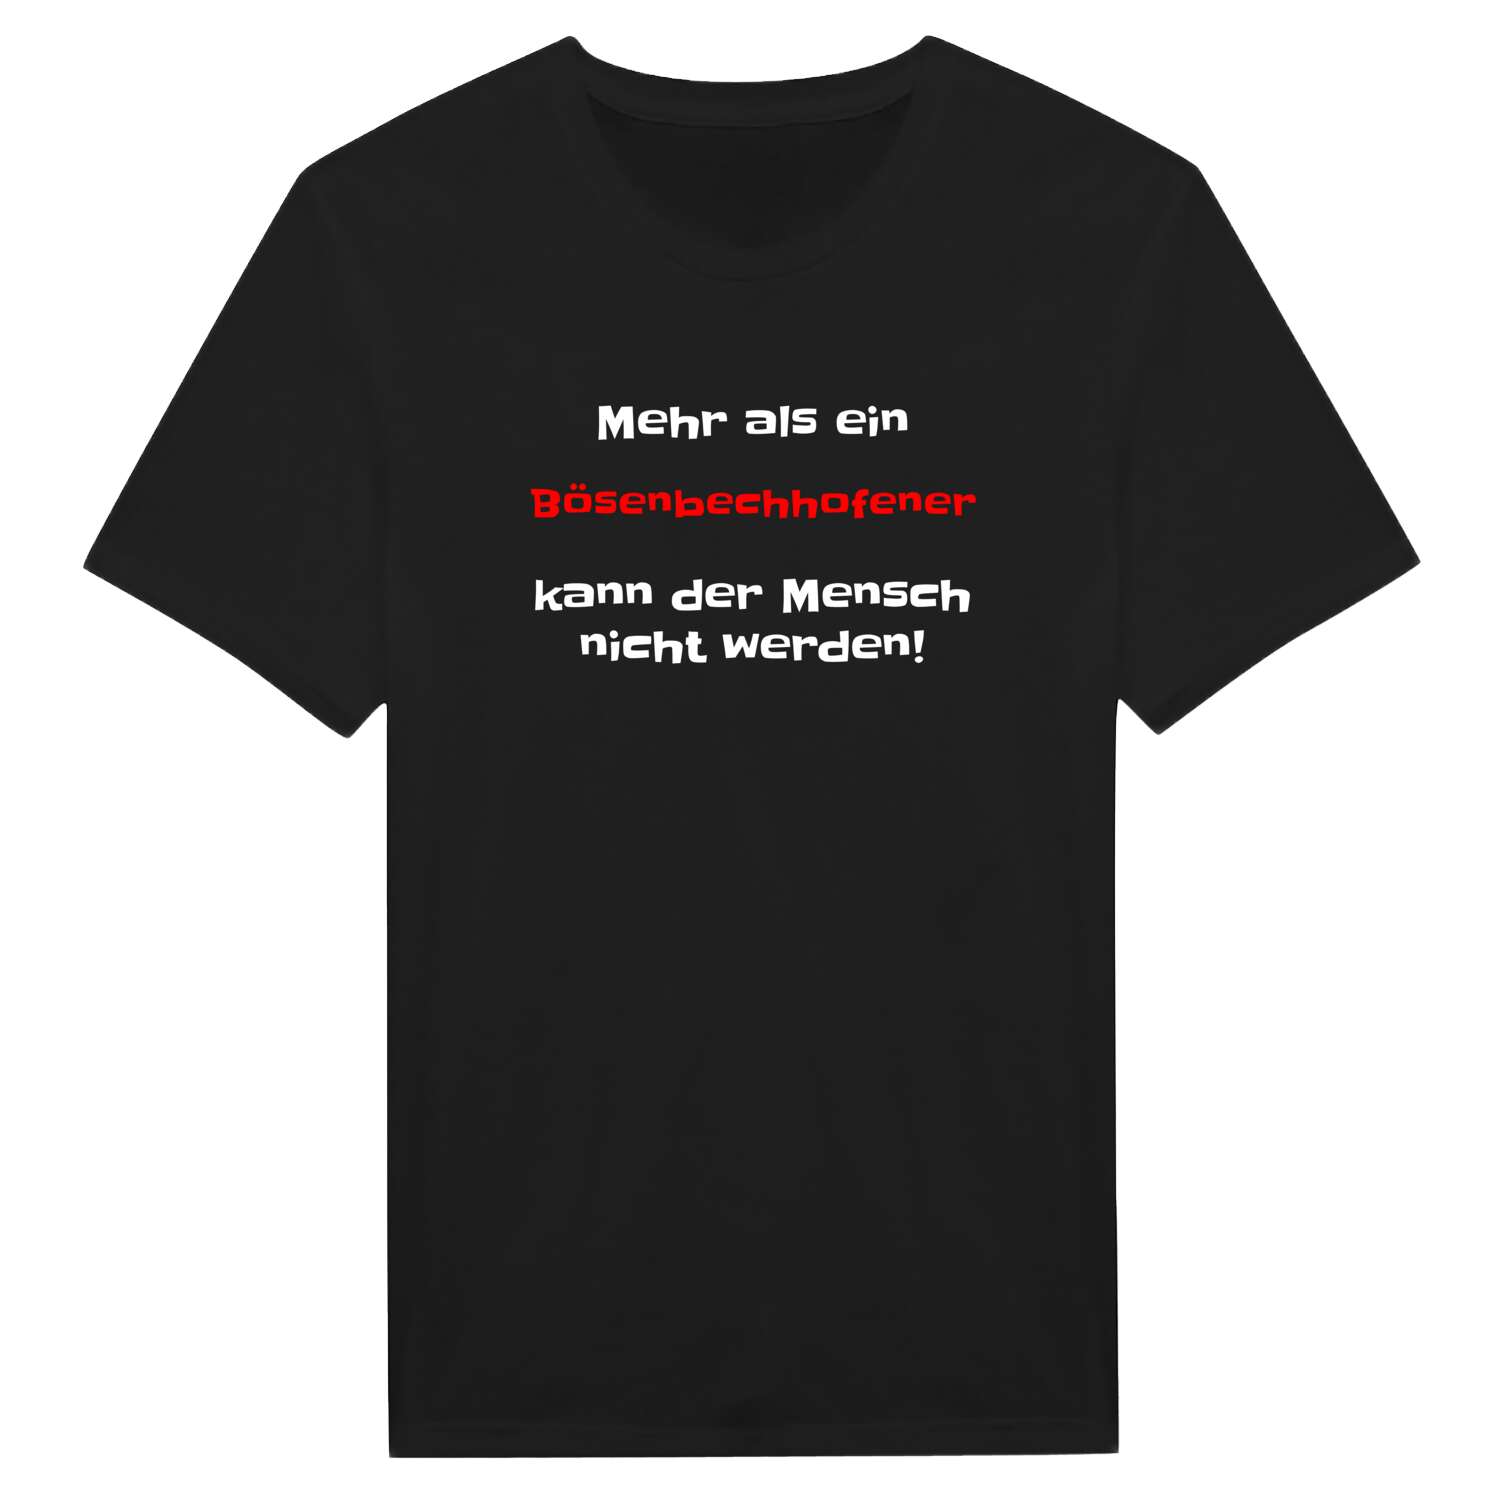 Bösenbechhofen T-Shirt »Mehr als ein«